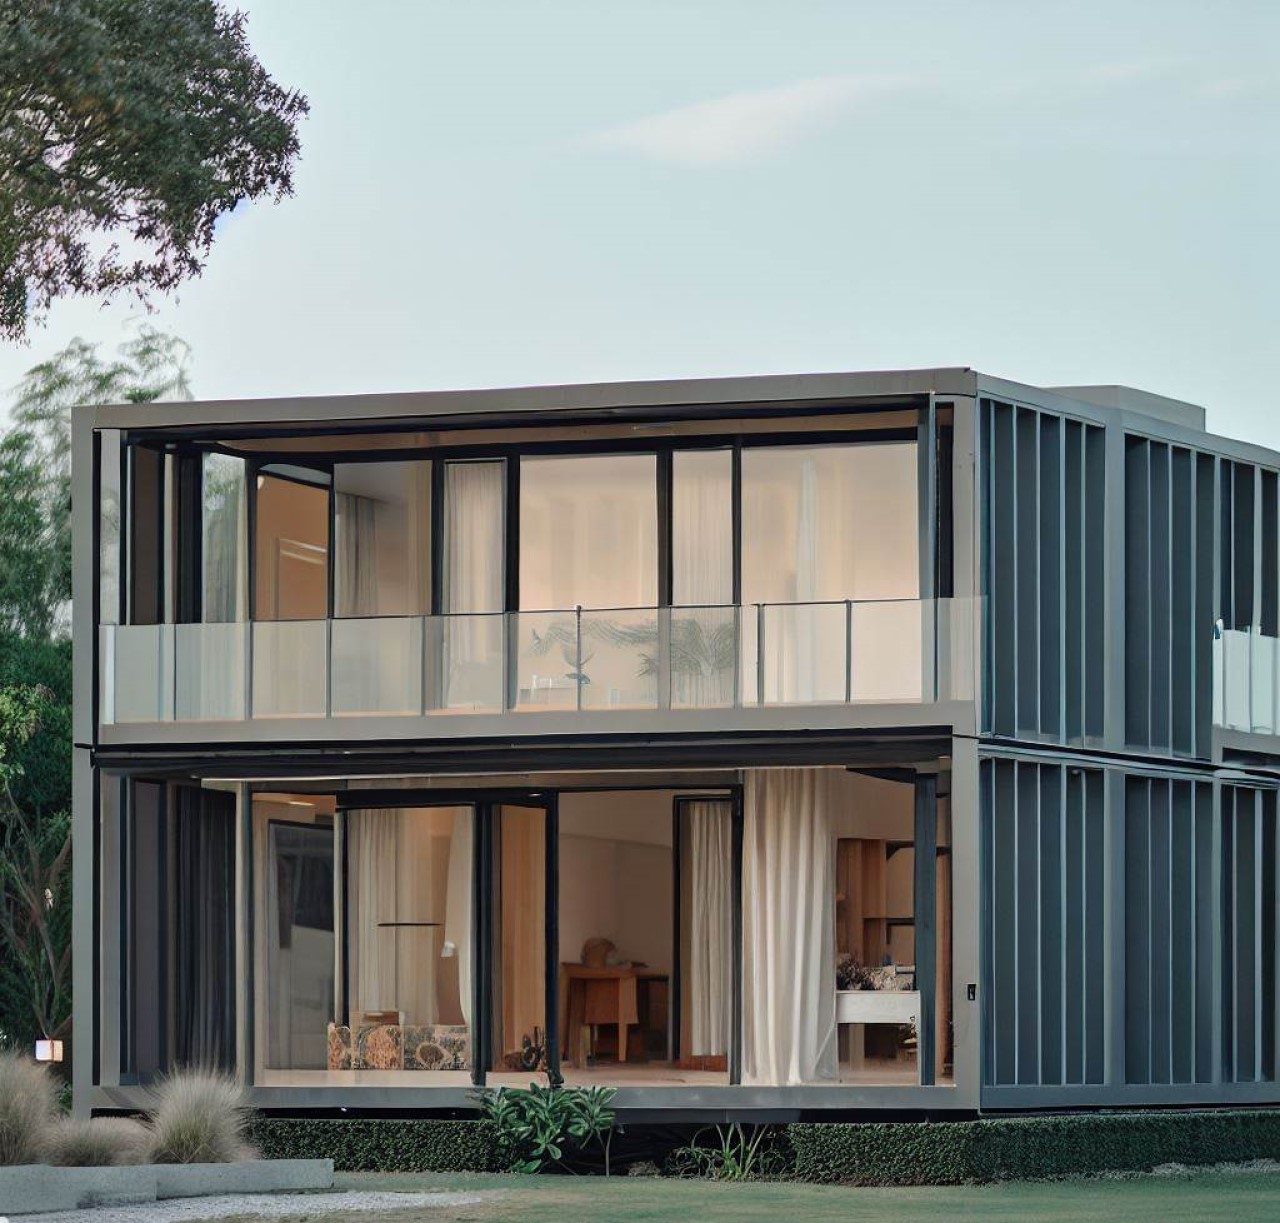 Casa prefabricada de diseño moderno y vanguardista, con líneas limpias y minimalistas